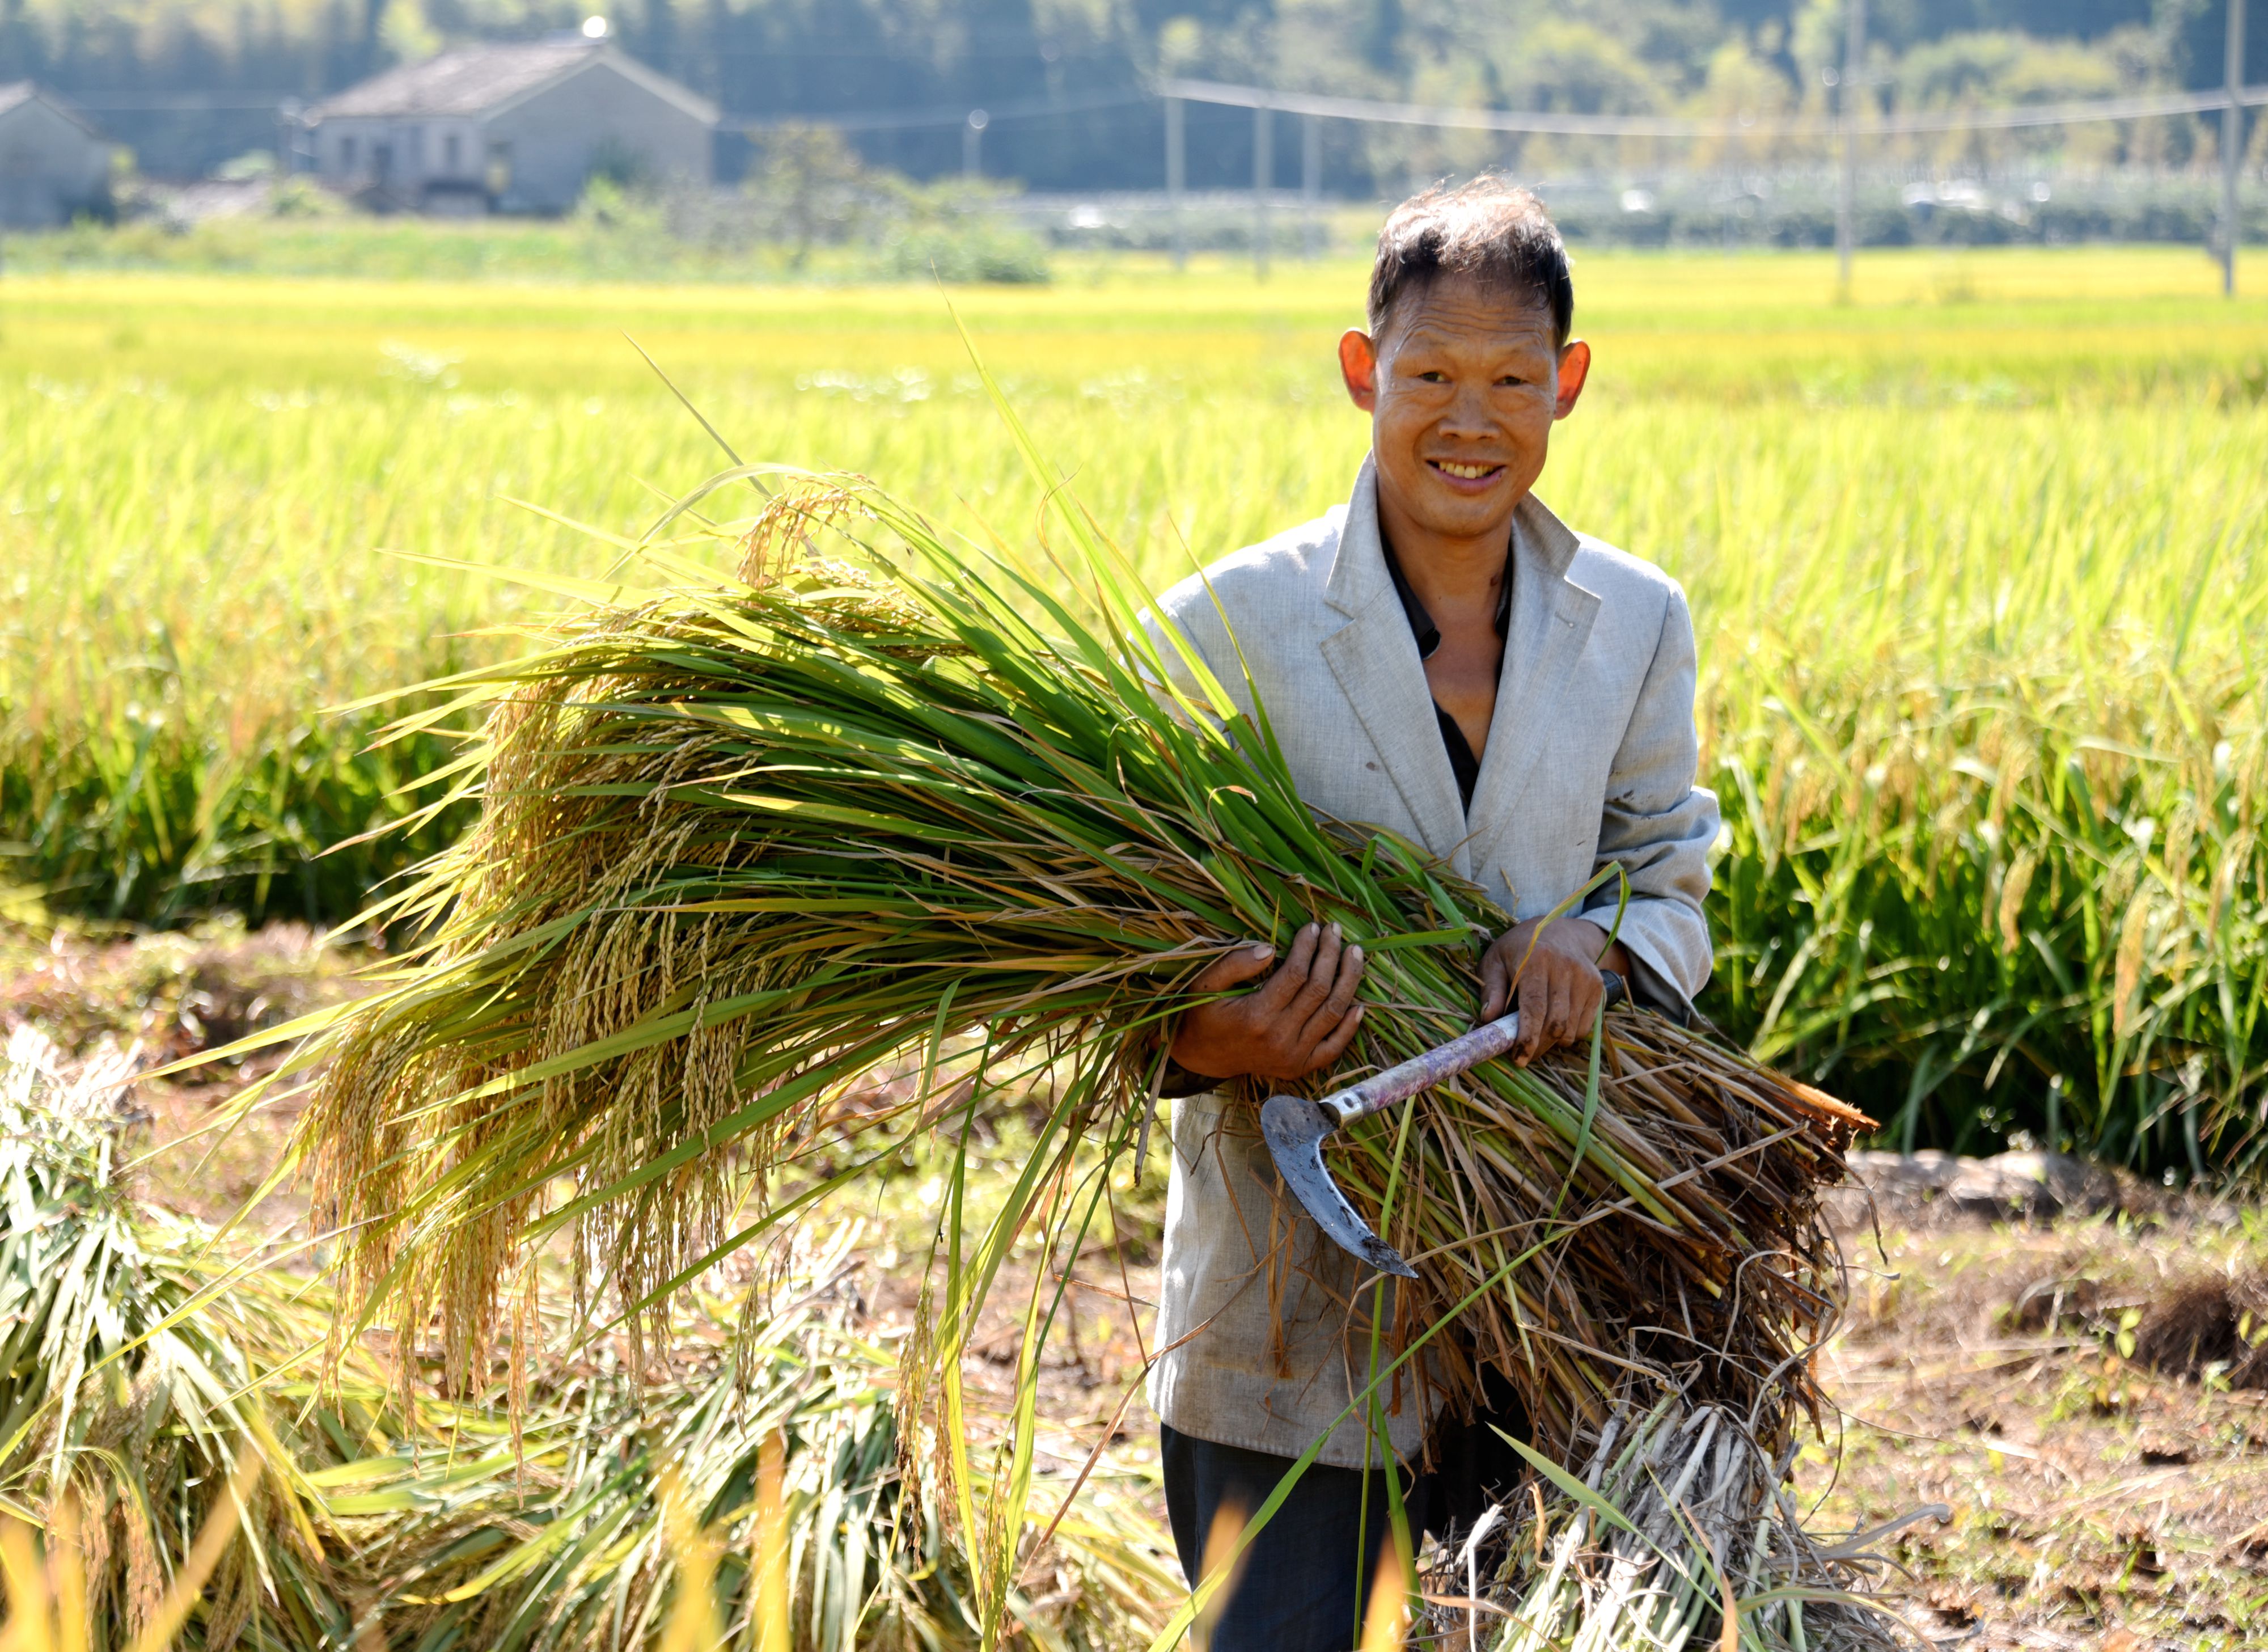 2018年9月29日,仙居县双庙乡农民正在收割稻谷.